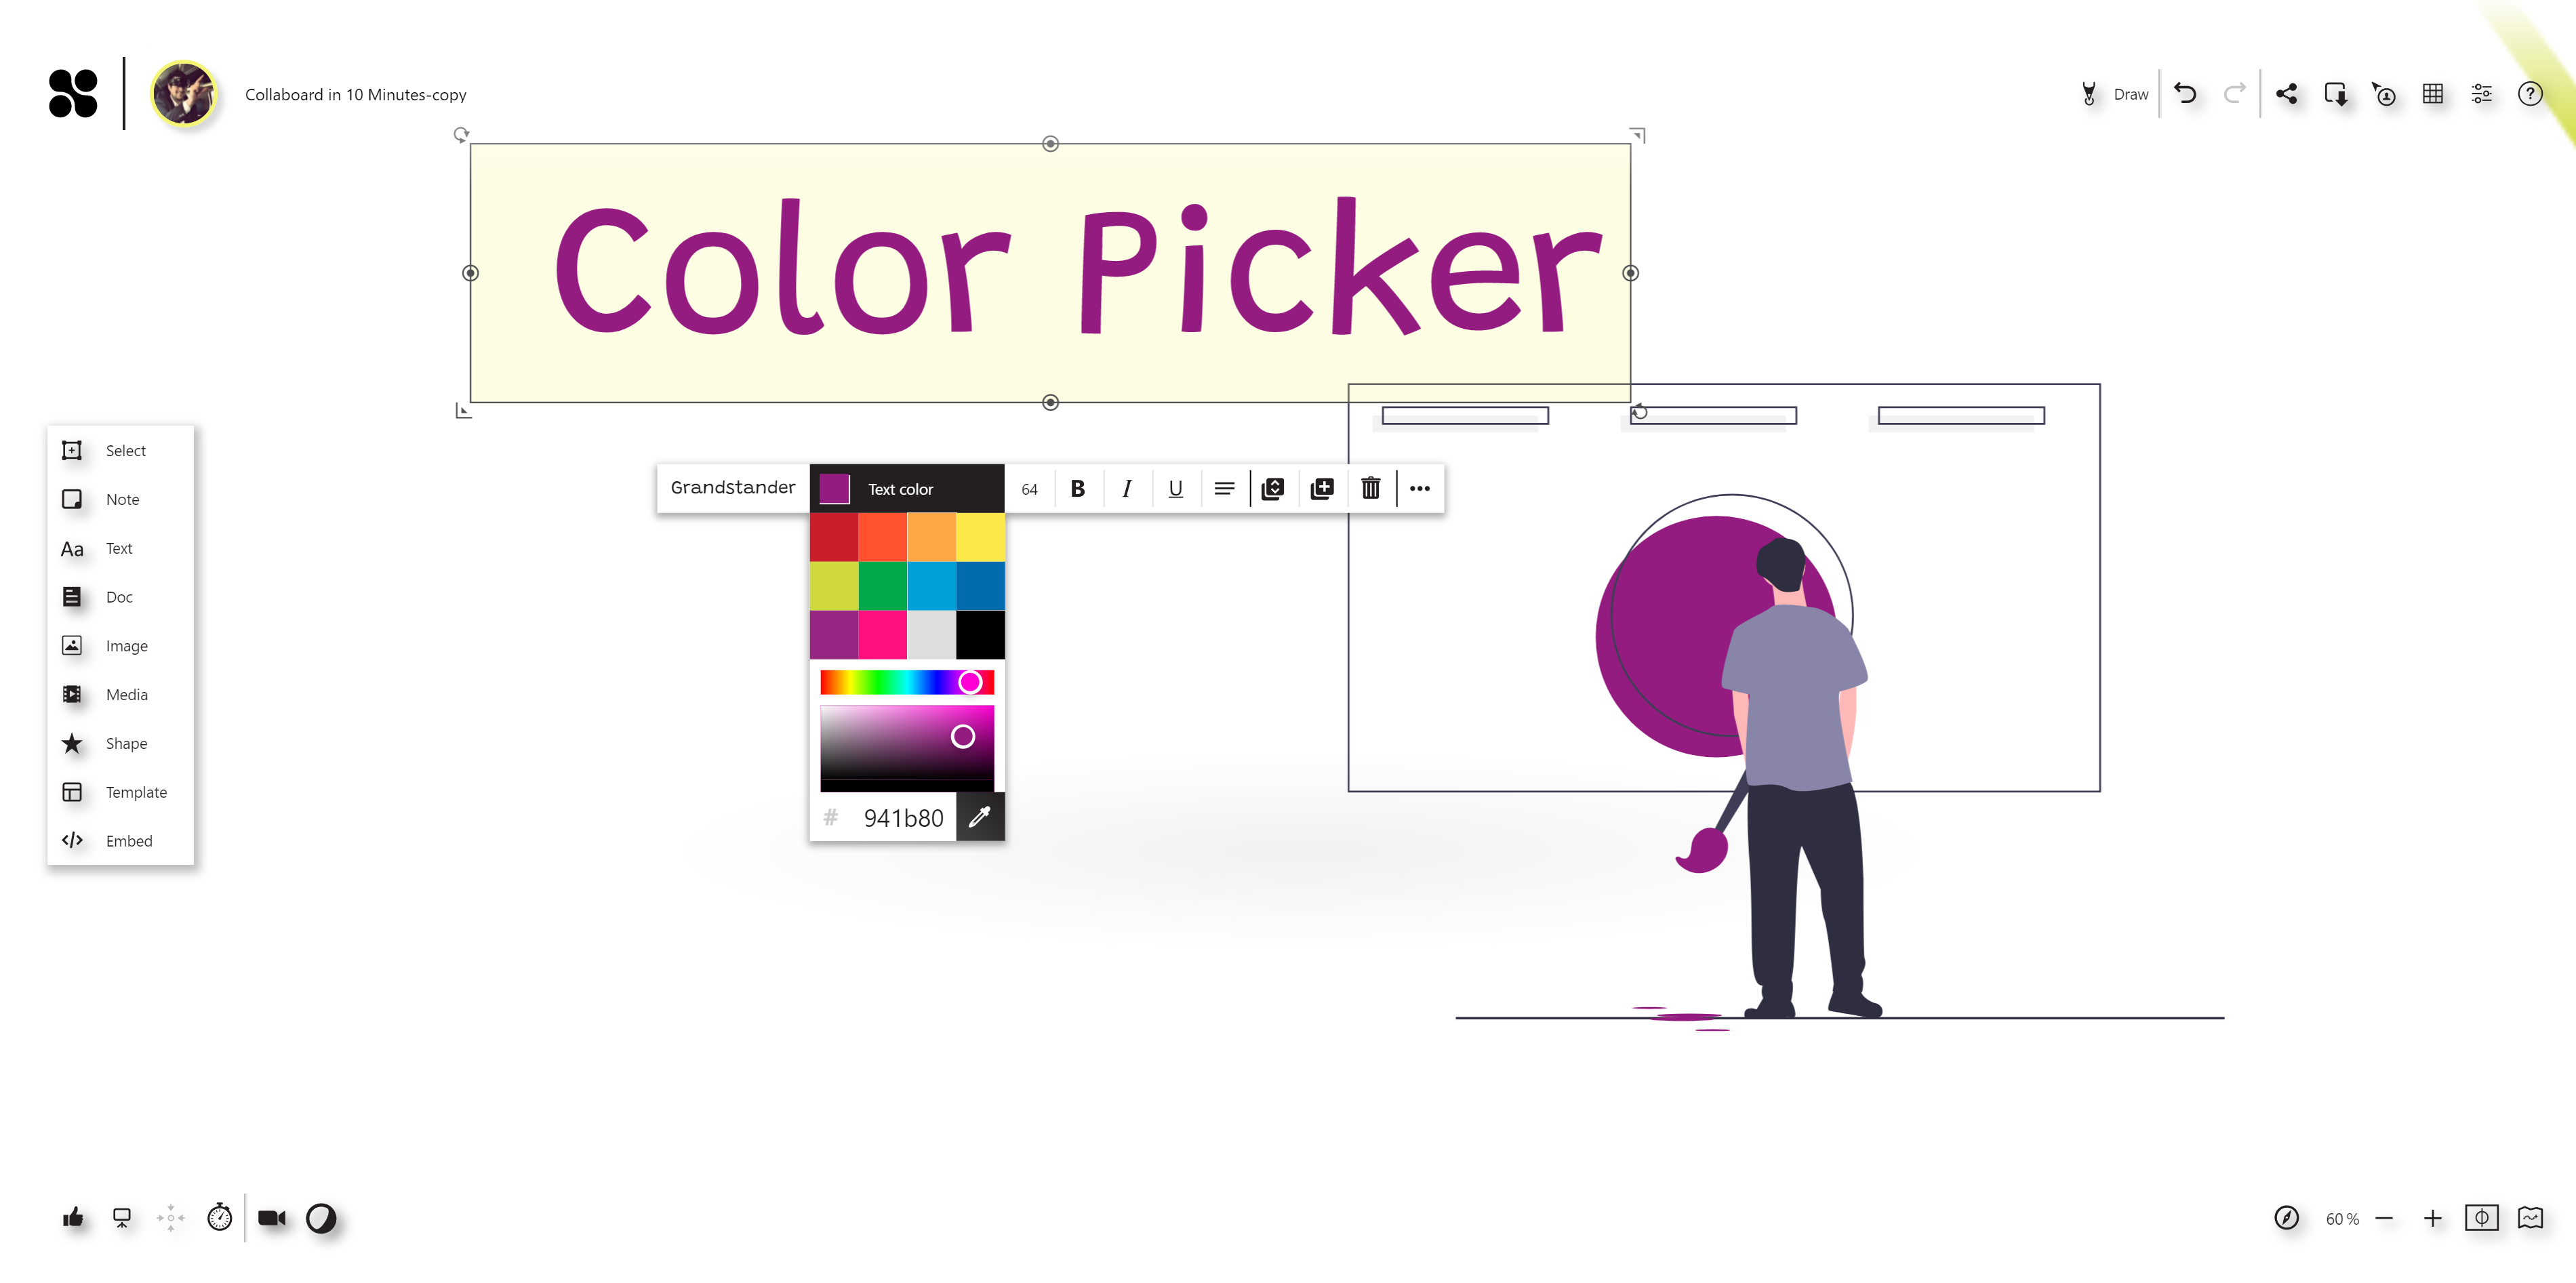 Color_Picker